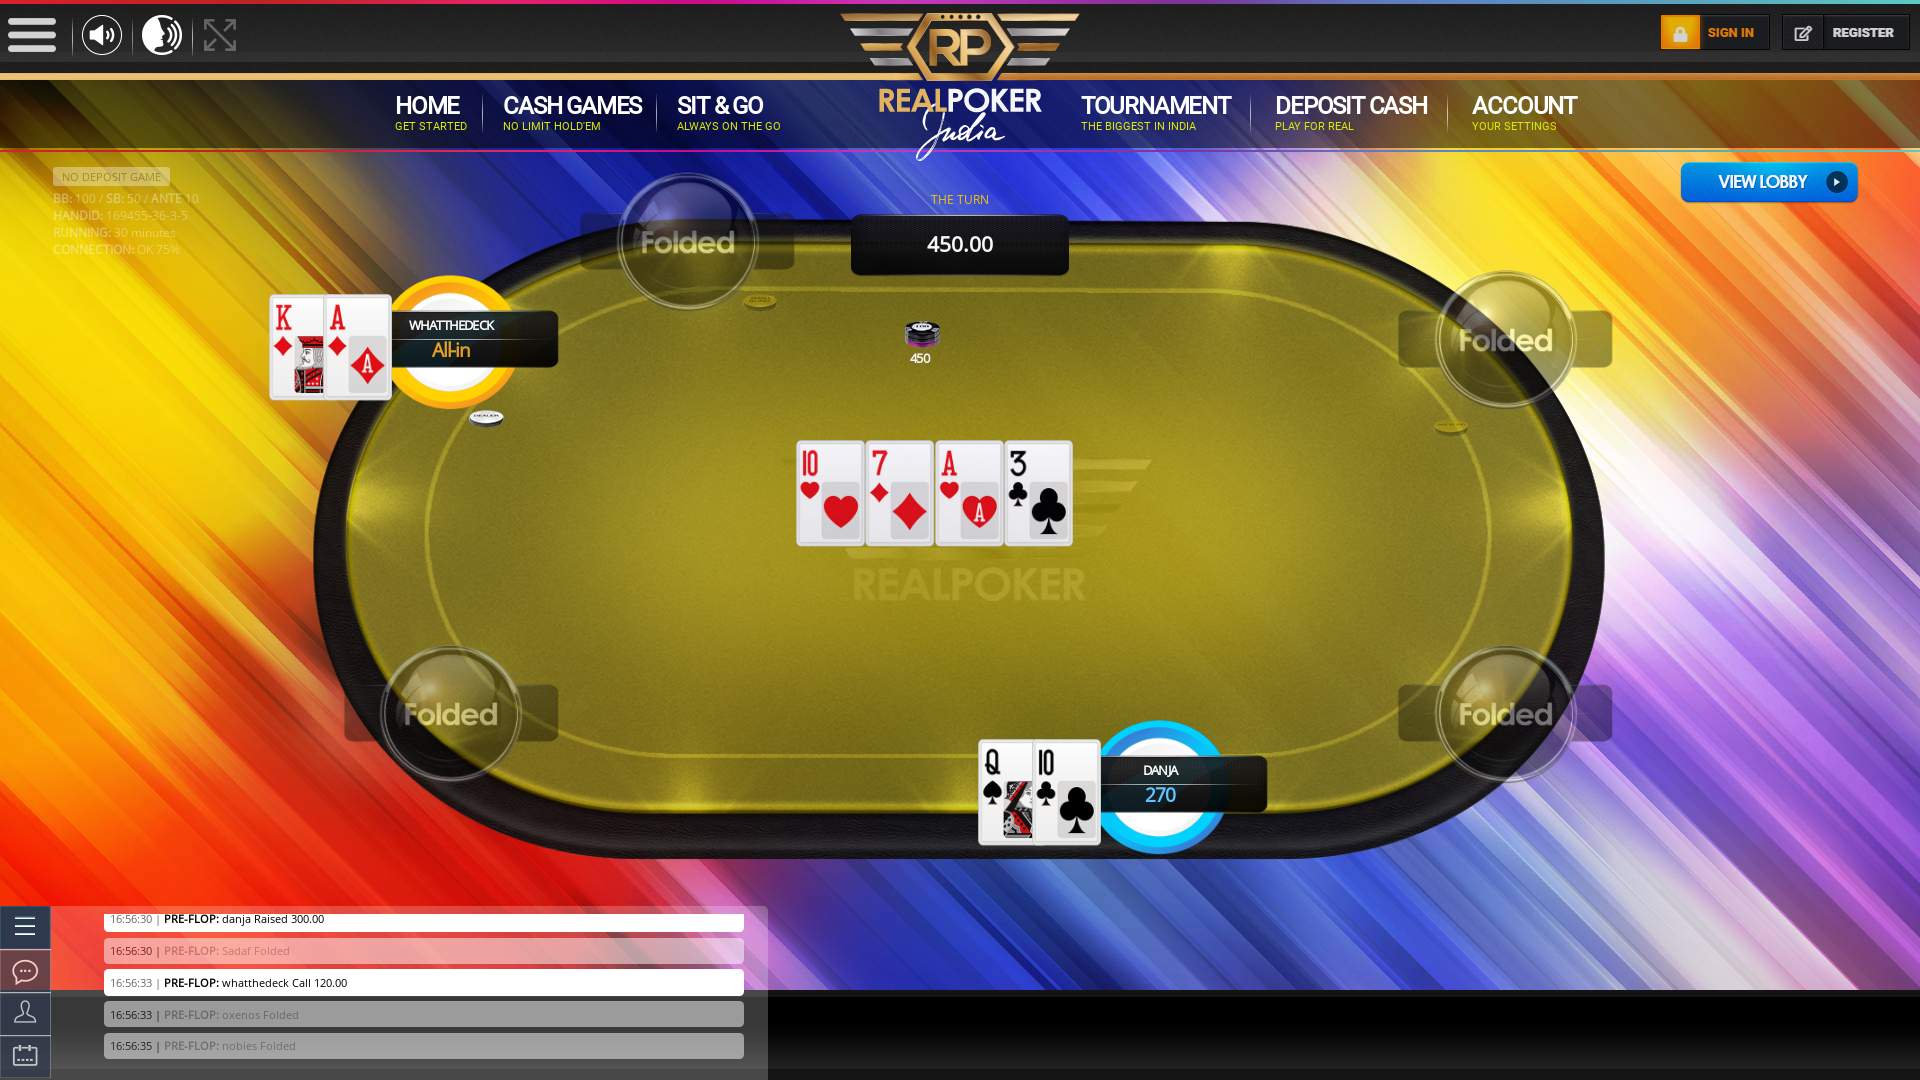 Sadaf playing some superb high risk poker hands